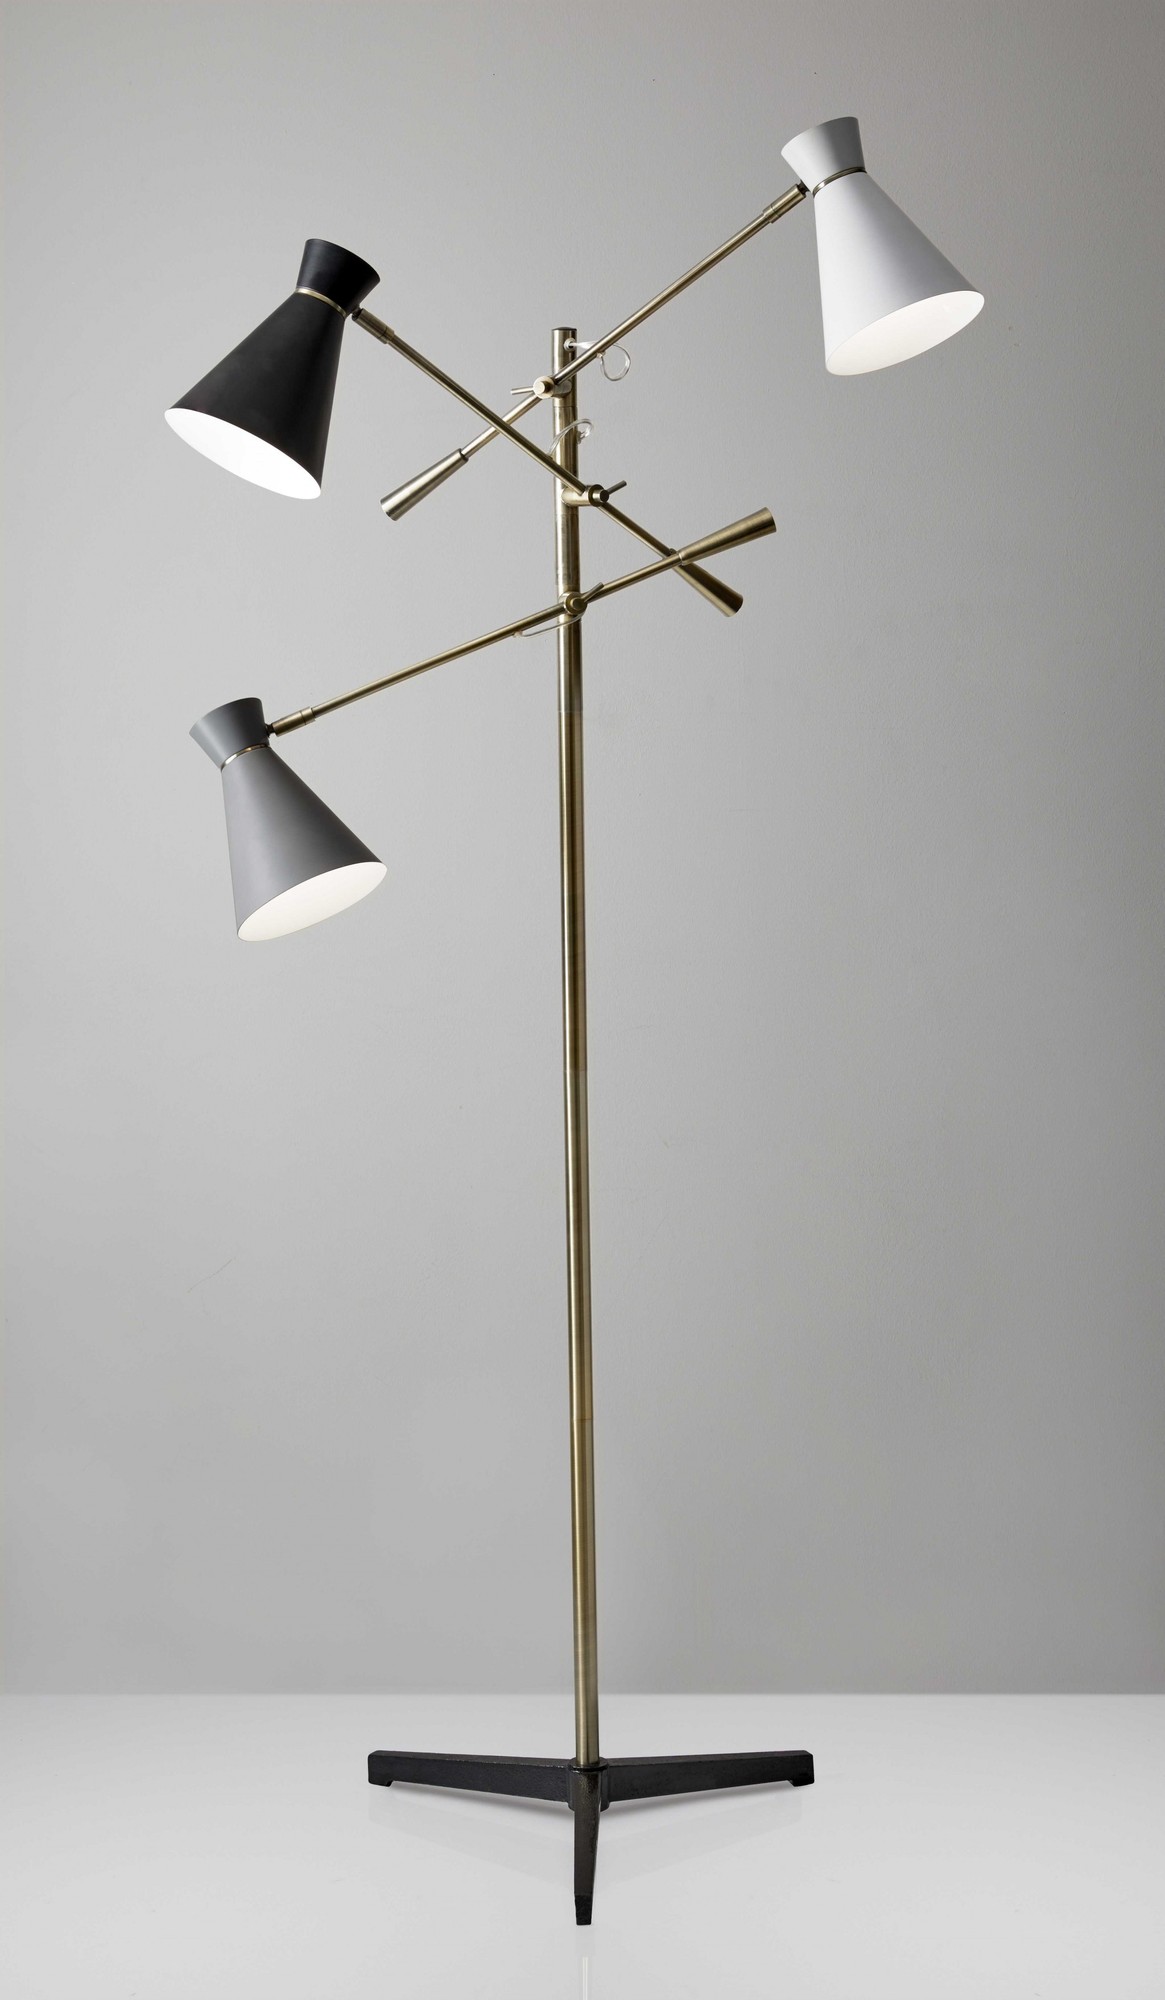 33" X 33" X 60-71" Brass Metal 3-Arm Floor Lamp